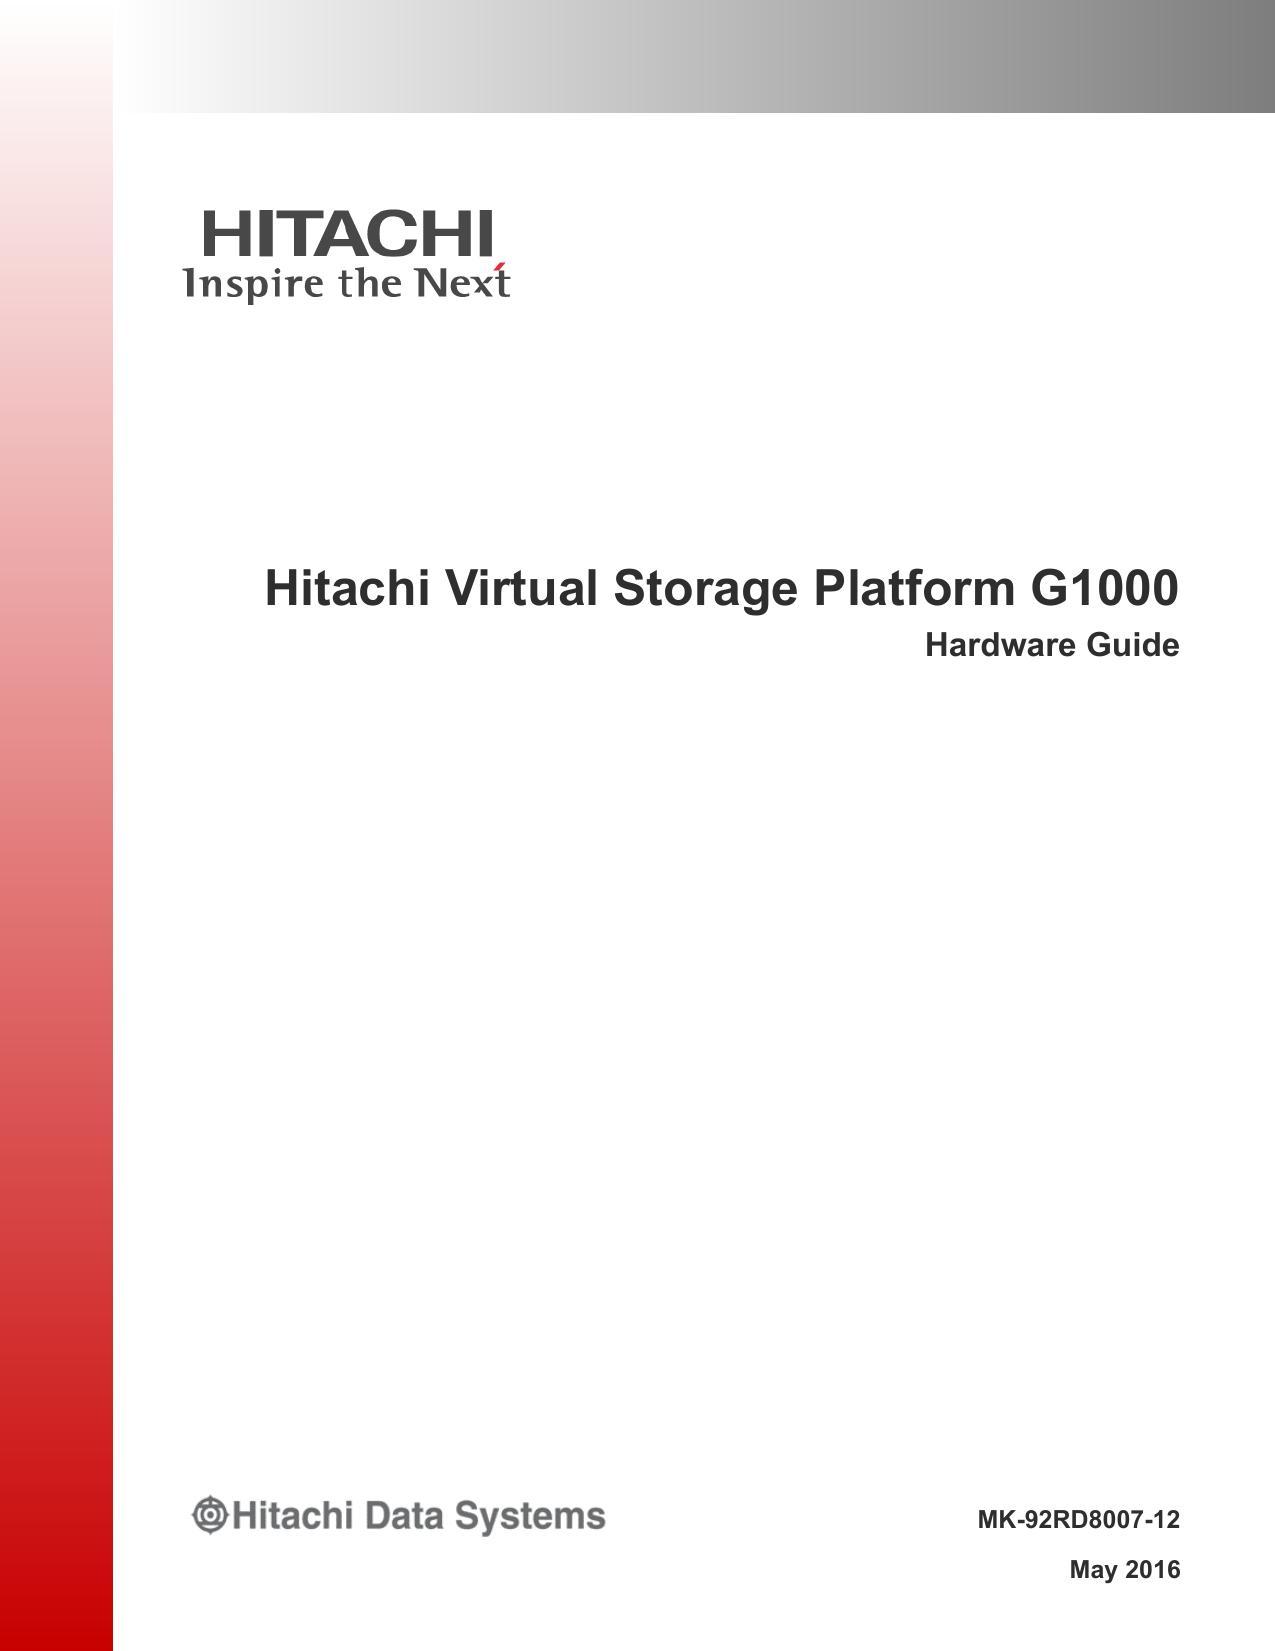 hitachi-virtual-storage-platform-g1000-hardware-guide.pdf